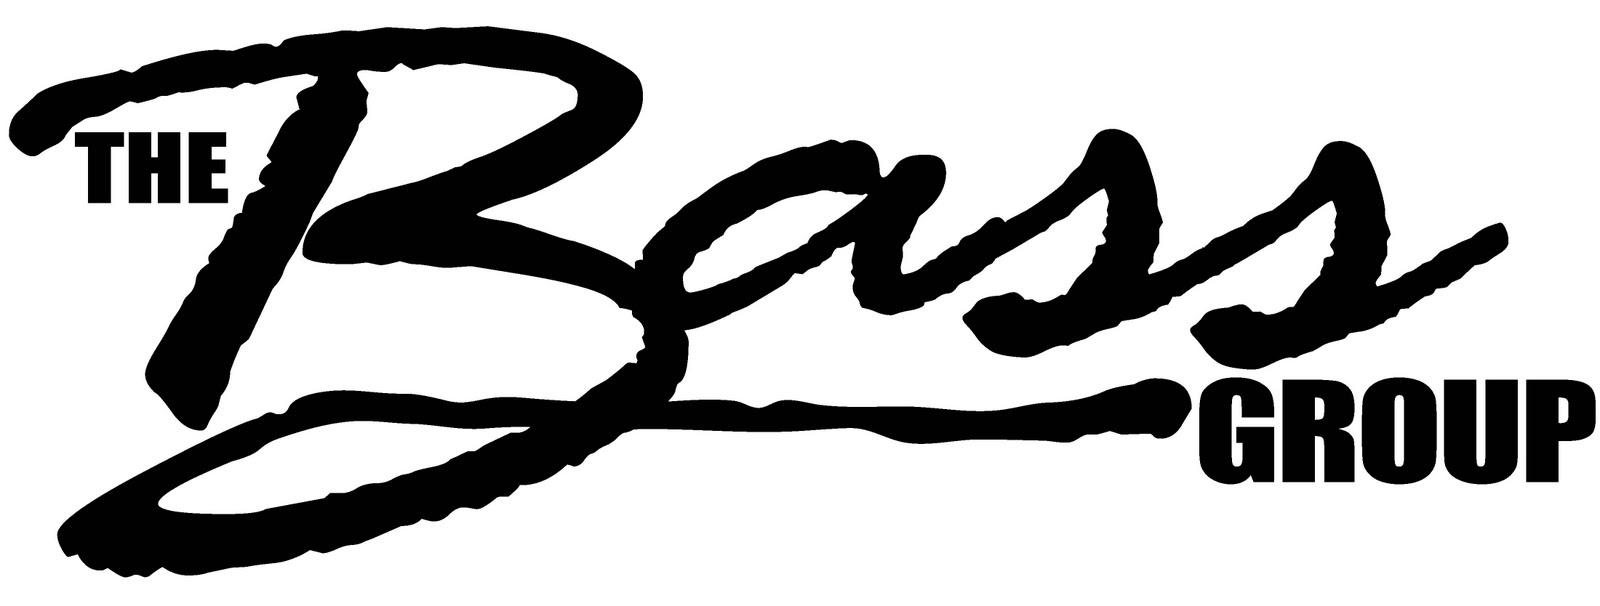 Bass Logos